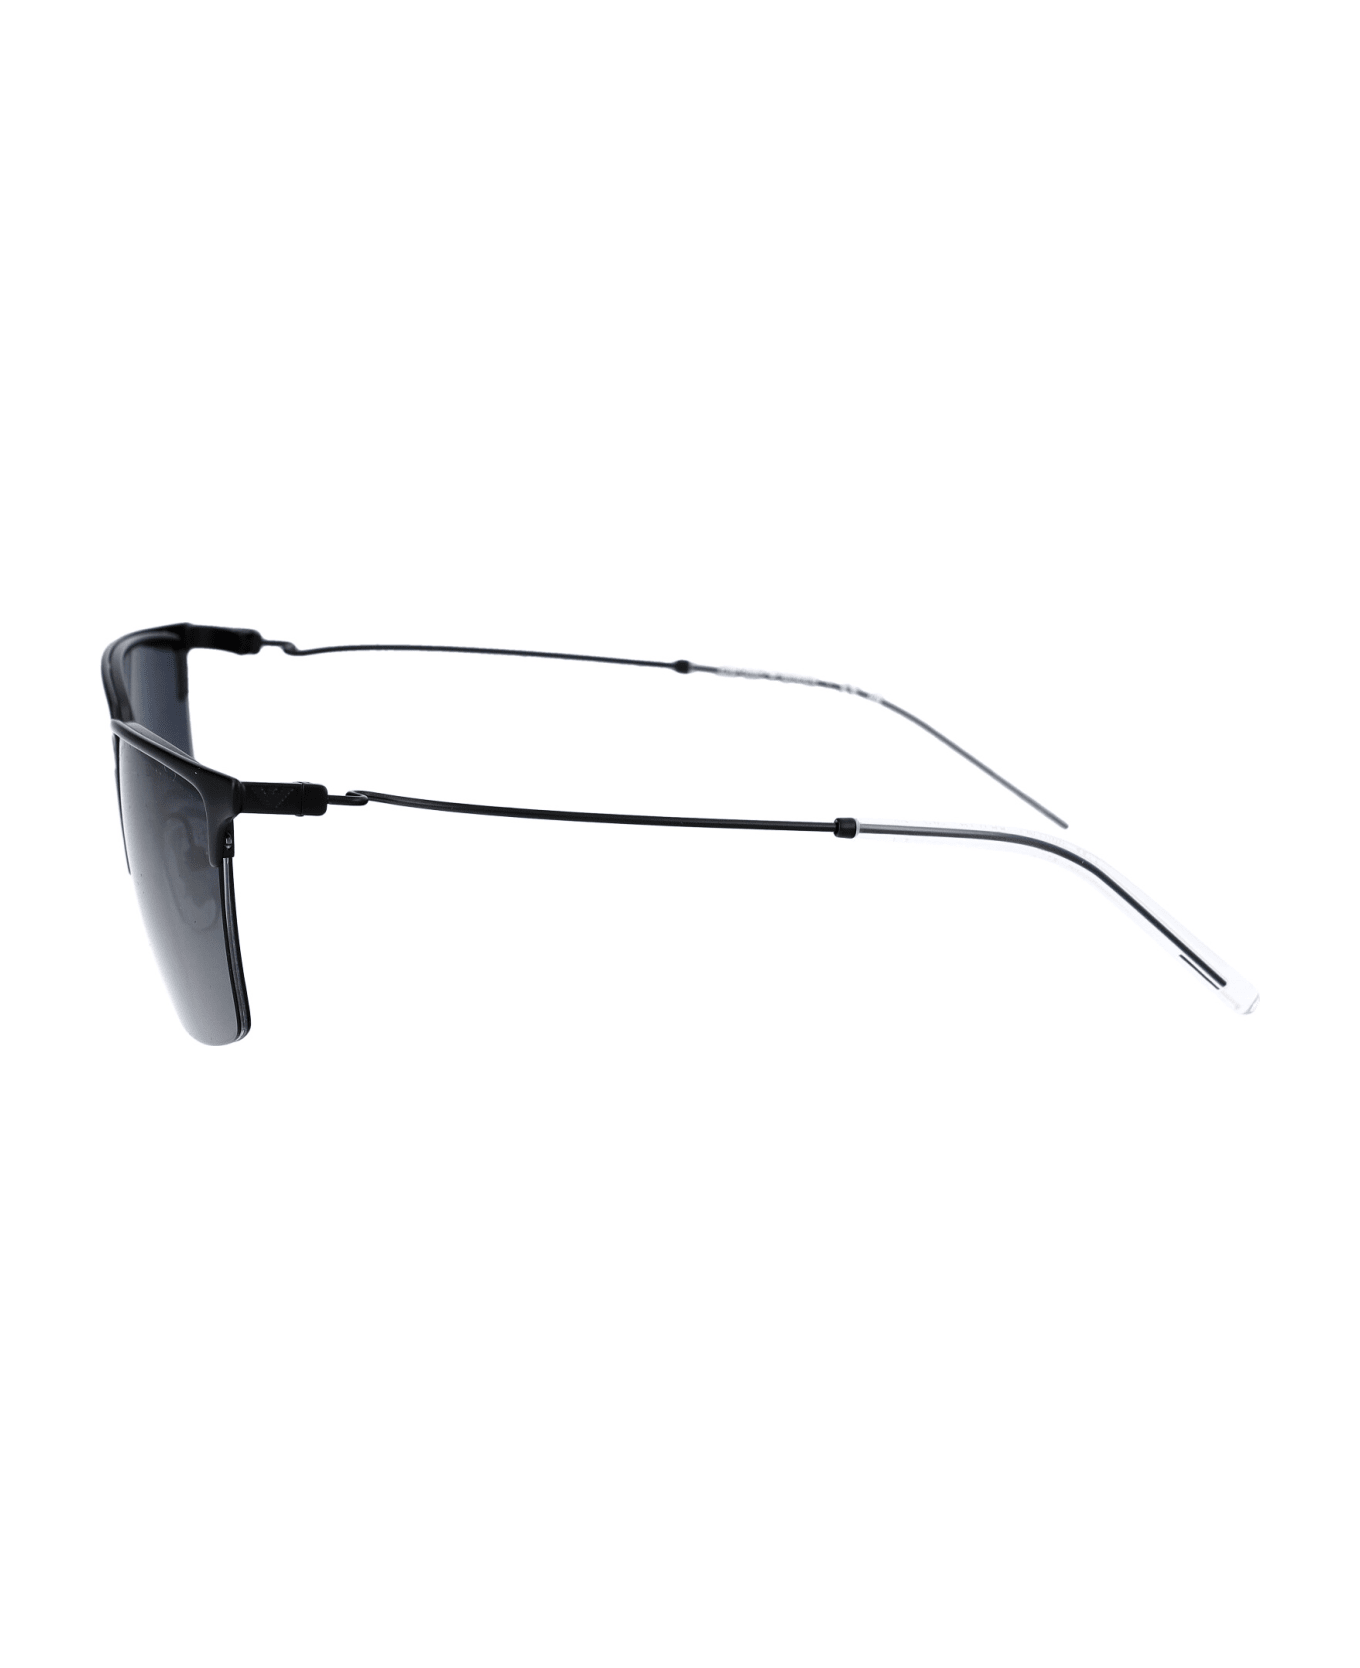 Emporio Armani 0ea2155 Sunglasses - 300187 MATTE BLACK サングラス